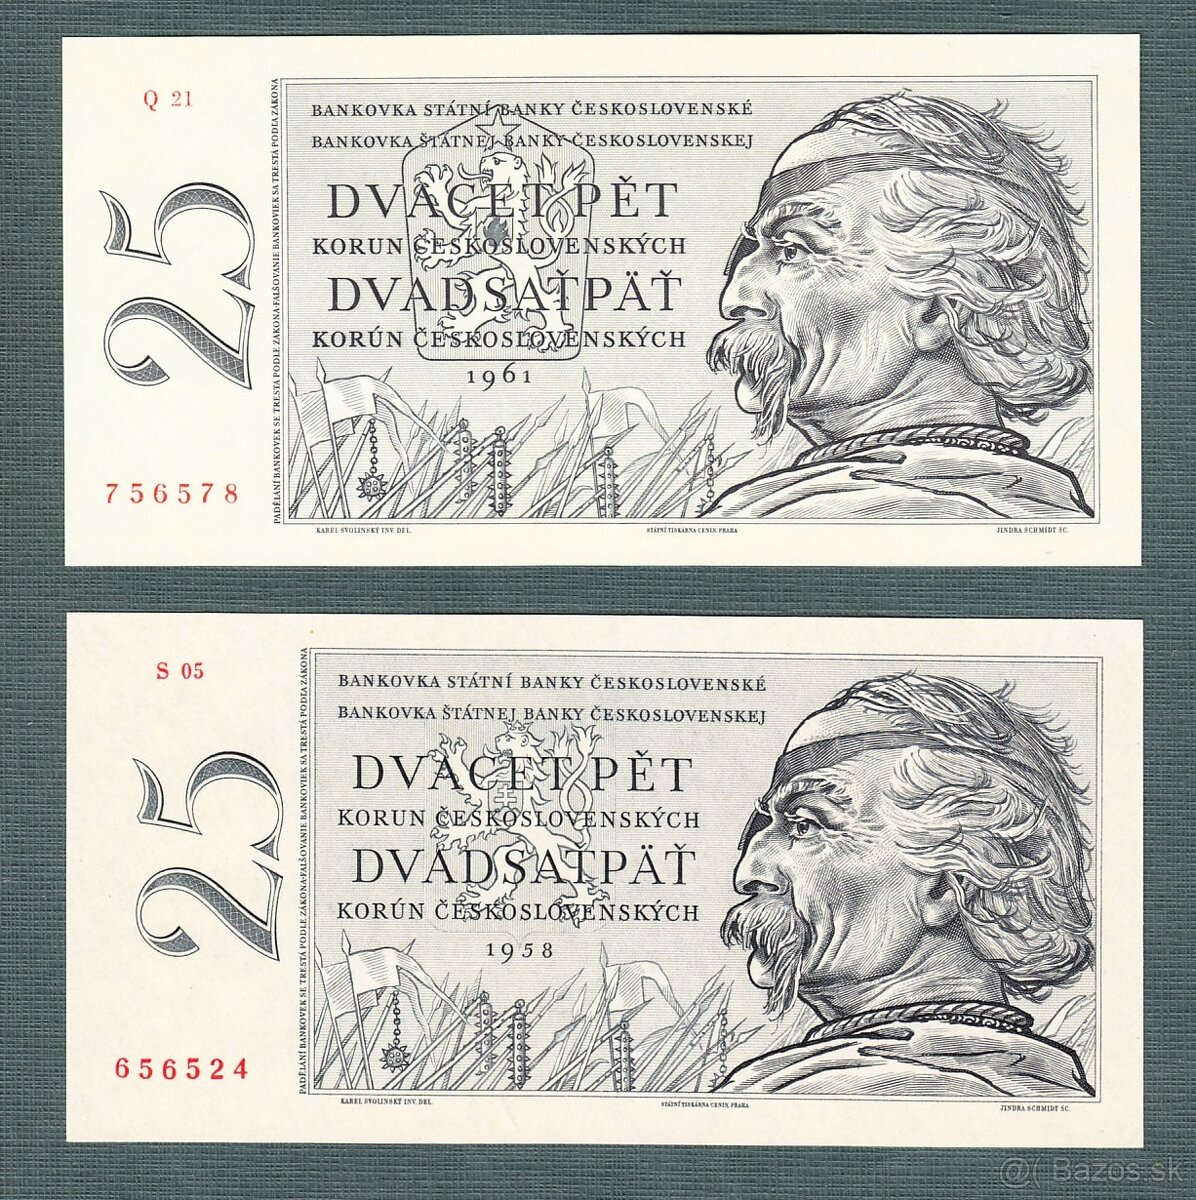 Staré bankovky 25 kčs 1958 a 1961 OBĚ VERZE, bezvadný stav